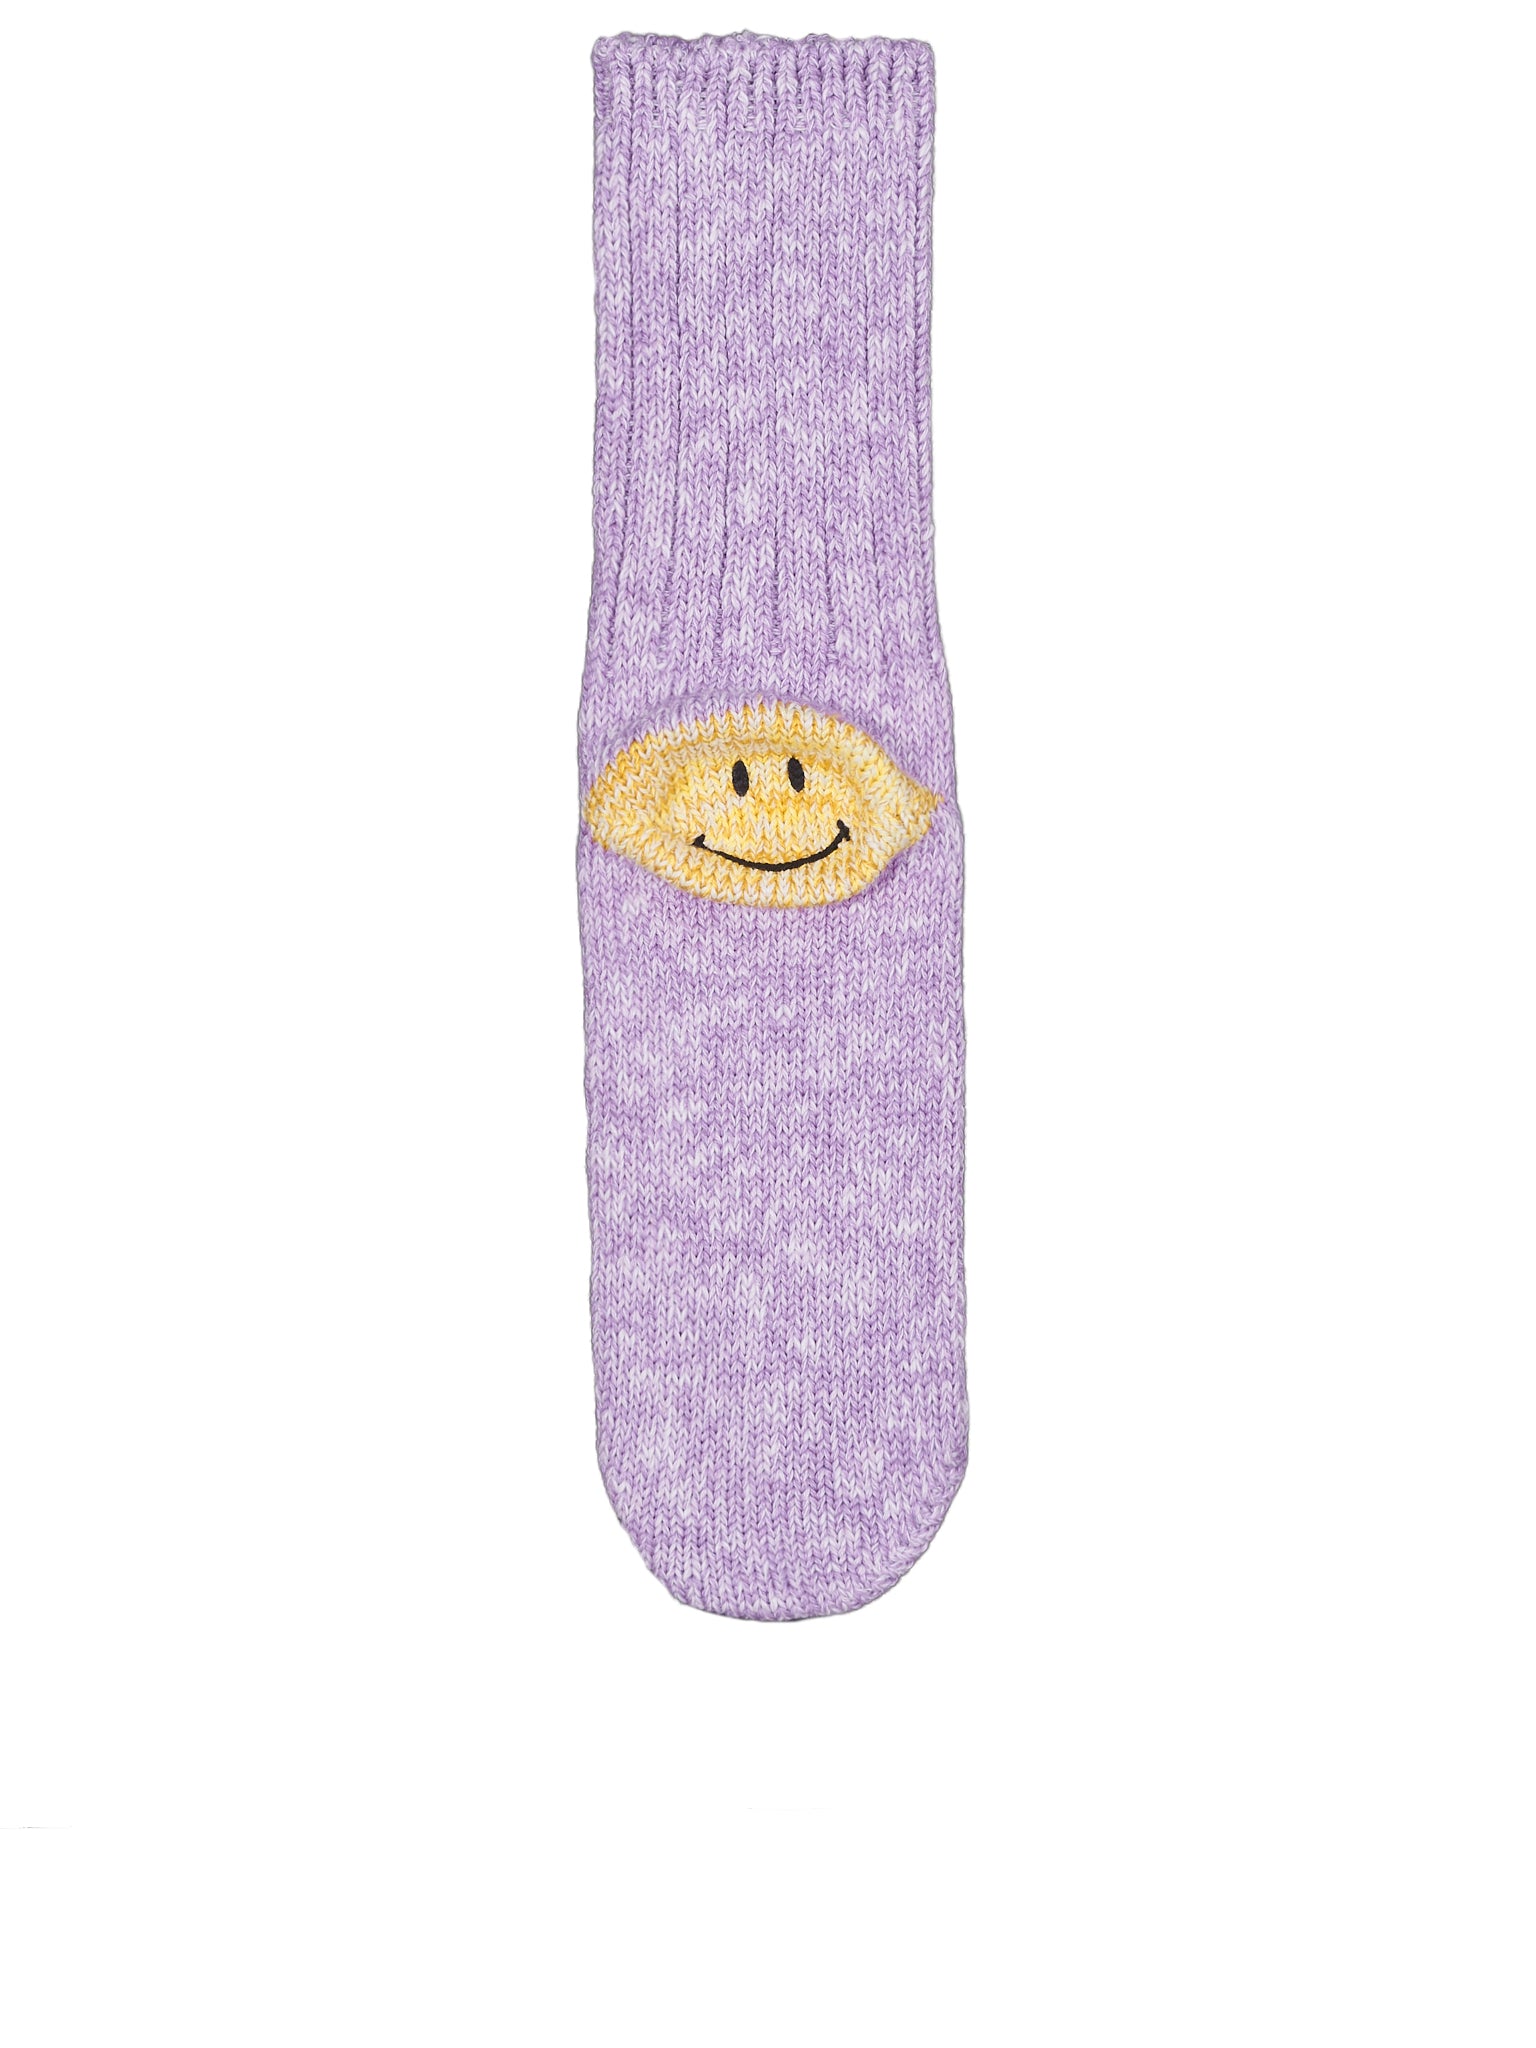 Smiley Socks (EK-887-PURPLE)